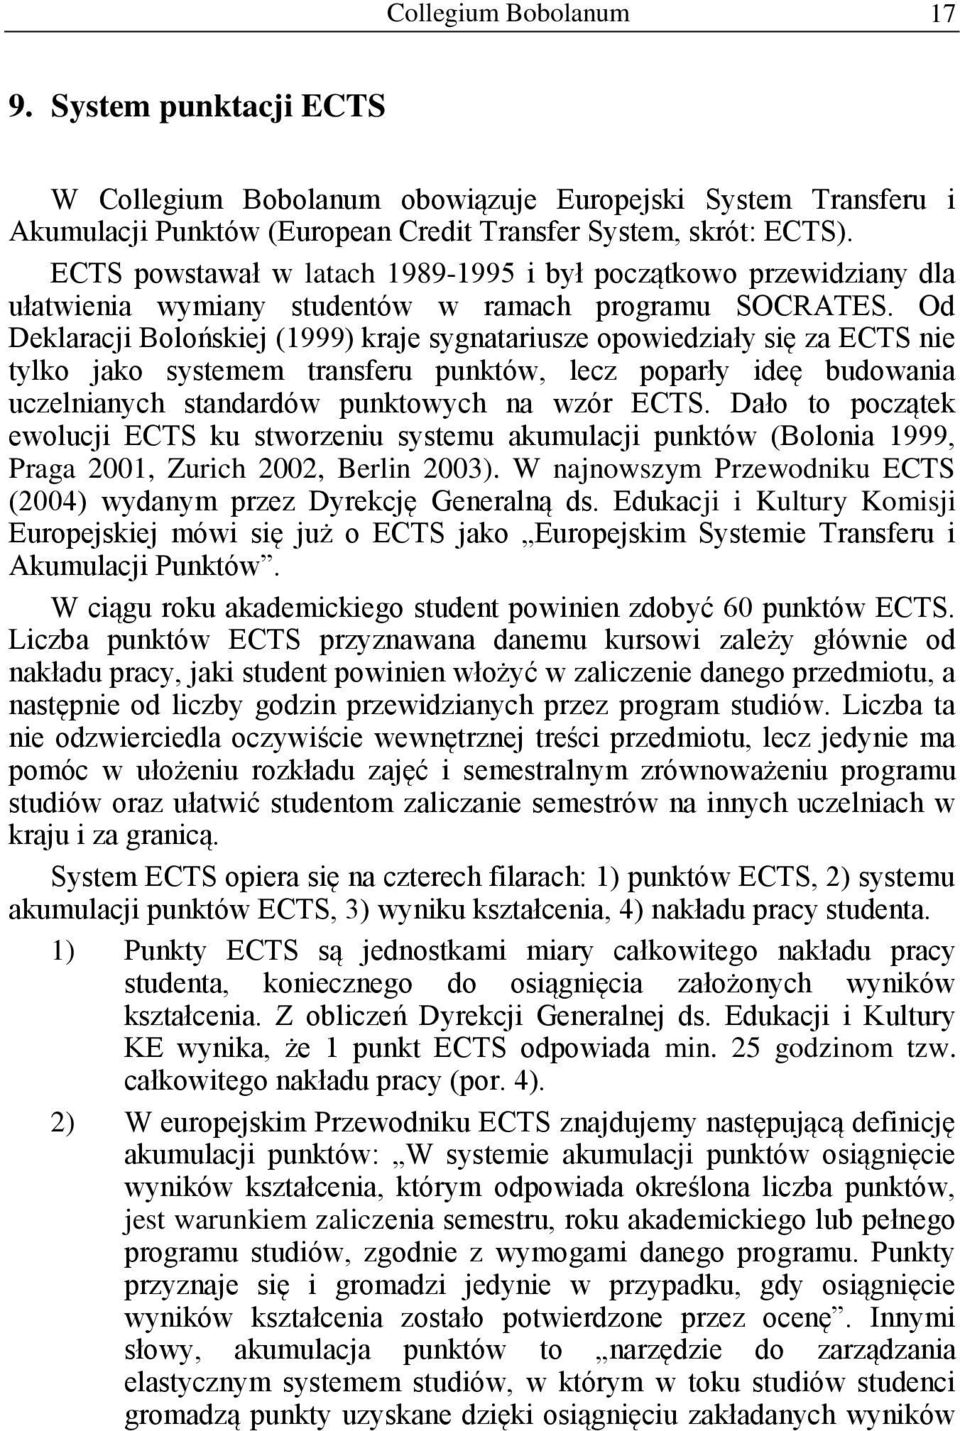 Od Deklaracji Bolońskiej (1999) kraje sygnatariusze opowiedziały się za ECTS nie tylko jako systemem transferu punktów, lecz poparły ideę budowania uczelnianych standardów punktowych na wzór ECTS.